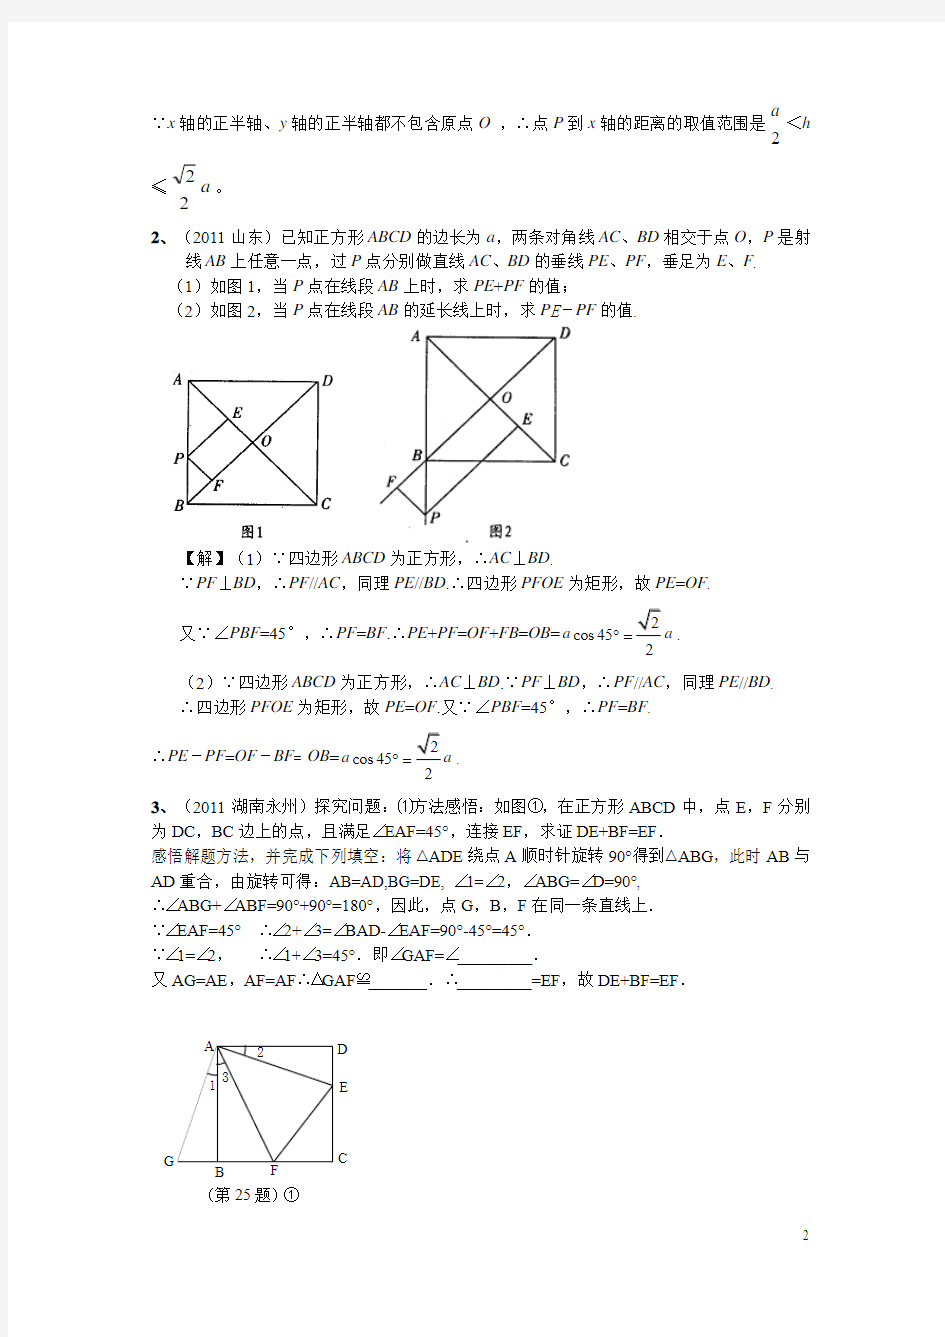 四边形专题讲座动点问题20121103答案解析二版专题11 动点问题20121103